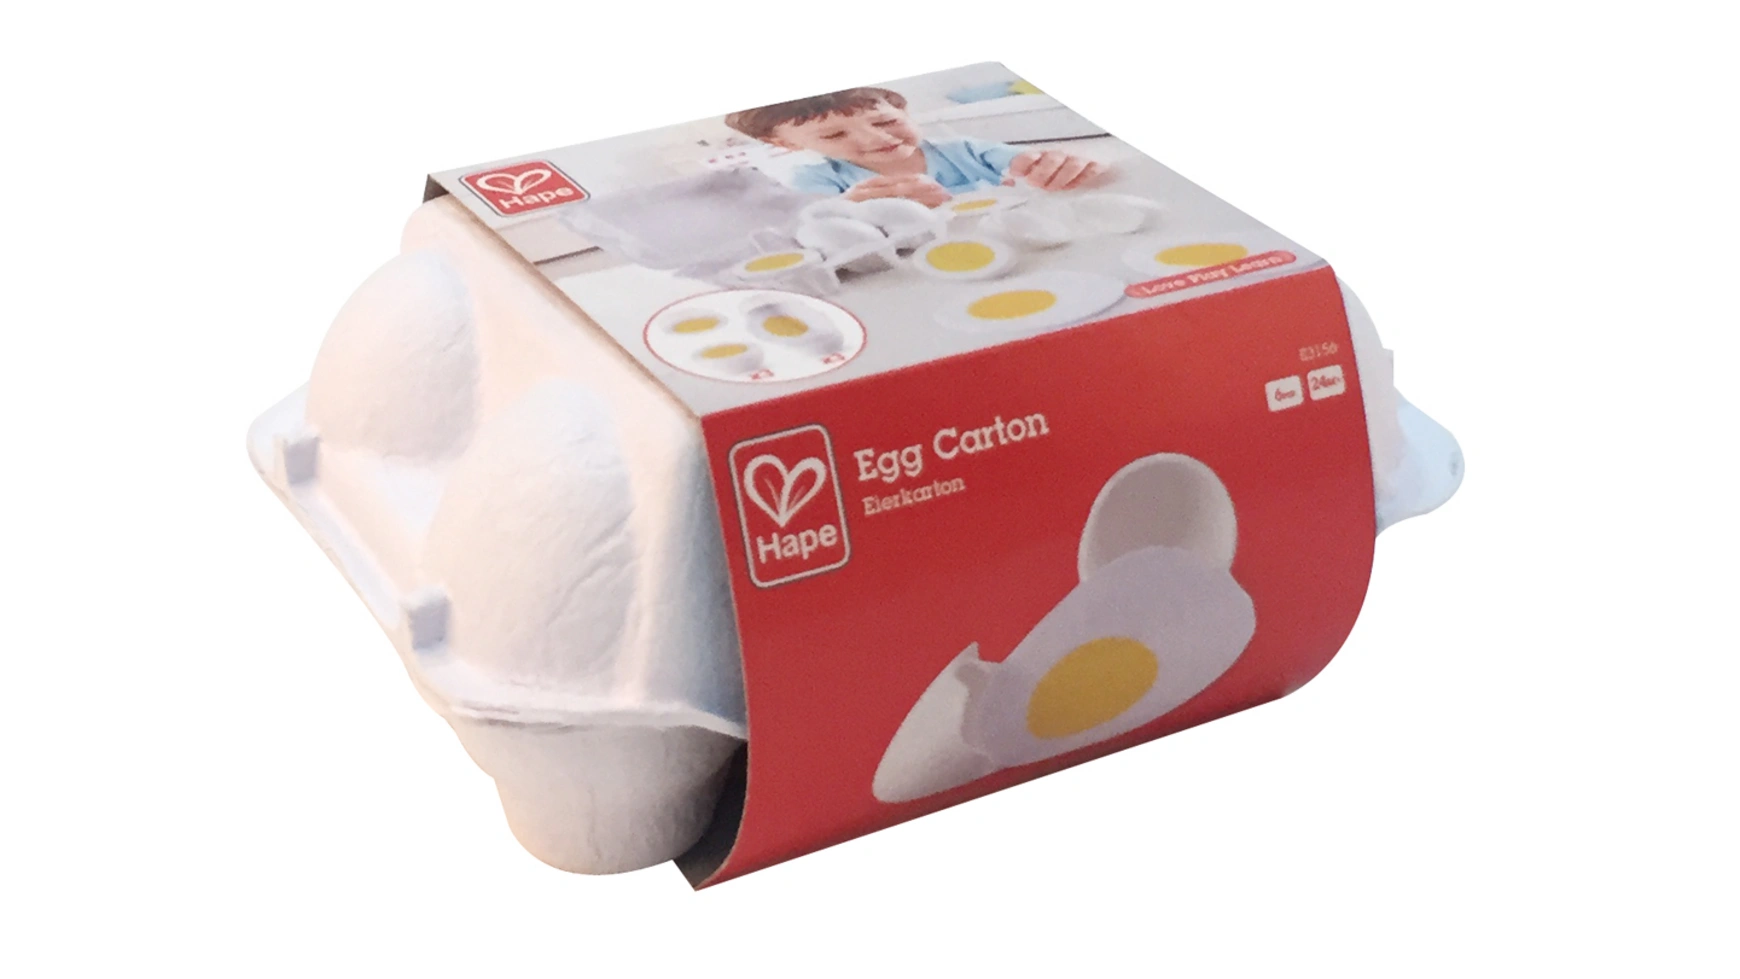 яйца 1 шт идеальный цвет таймер с изменяющимся вкусные мягкие вкрутую вареные для яиц Картонная коробка для яиц